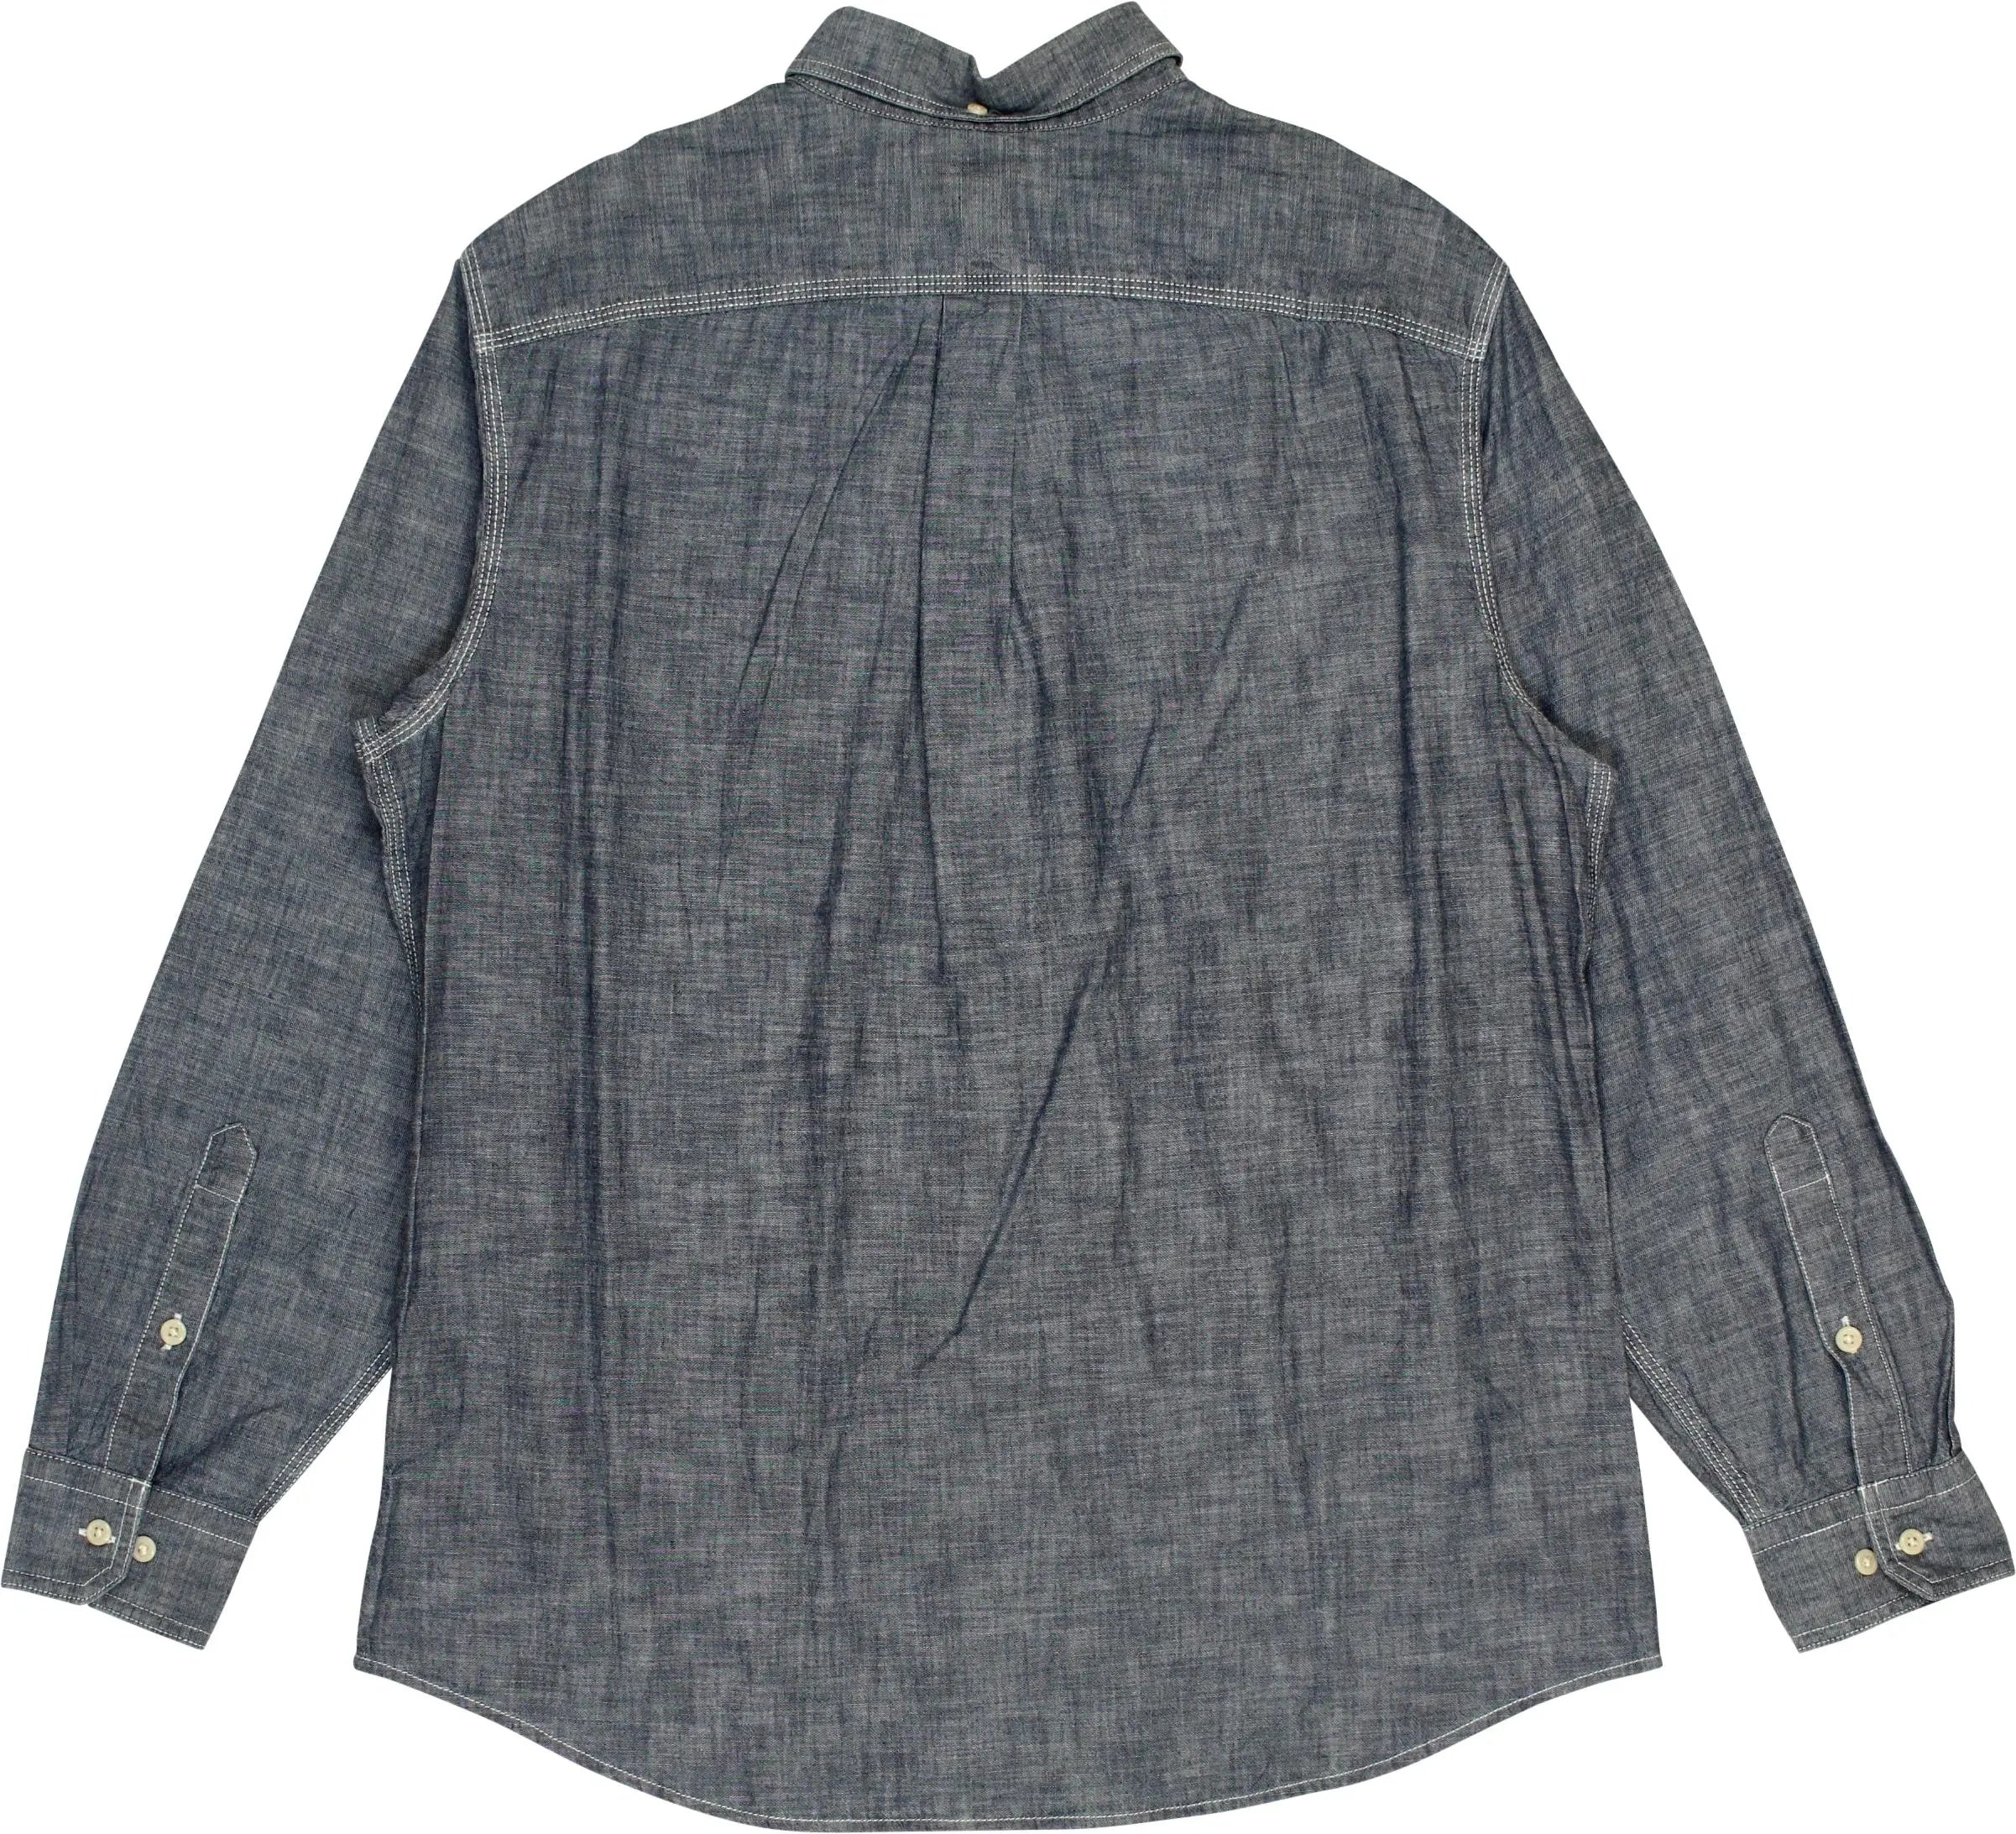 Lands' End - Denim Shirt- ThriftTale.com - Vintage and second handclothing